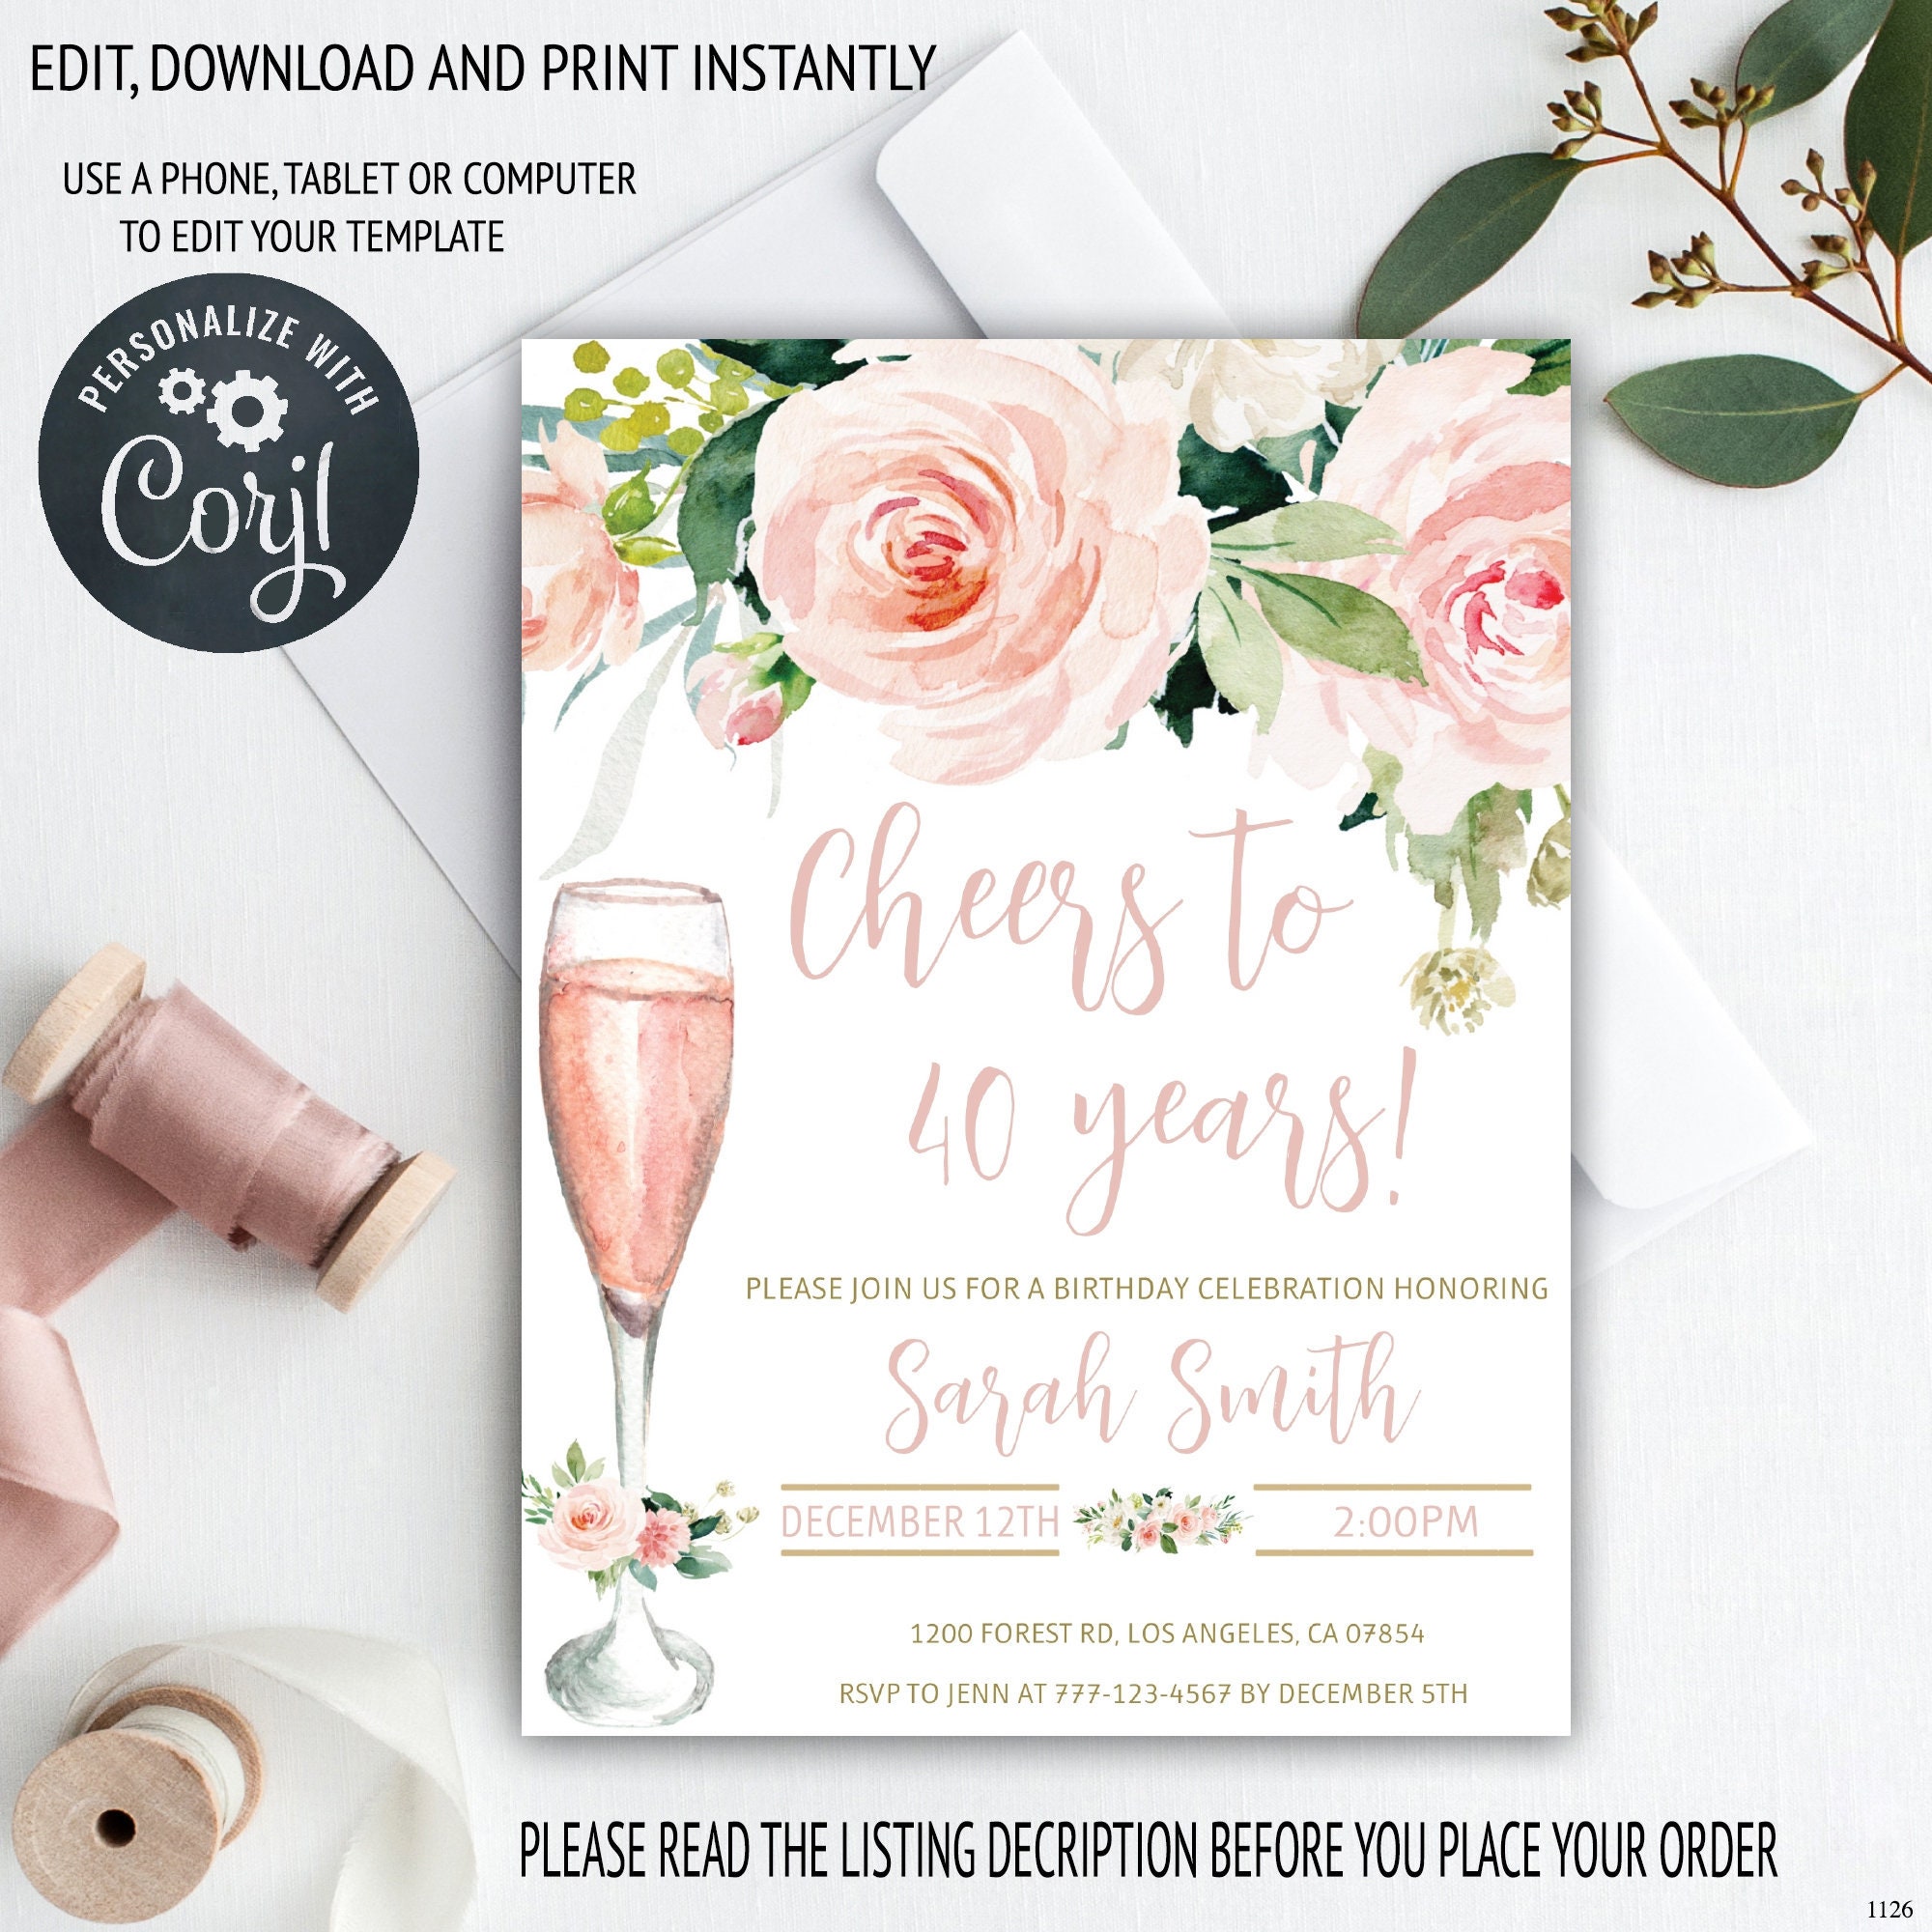 Bouquet de ballons Cheers Champagne Noir Et Or Avec Confettis –  Chant-O-Fêtes Party